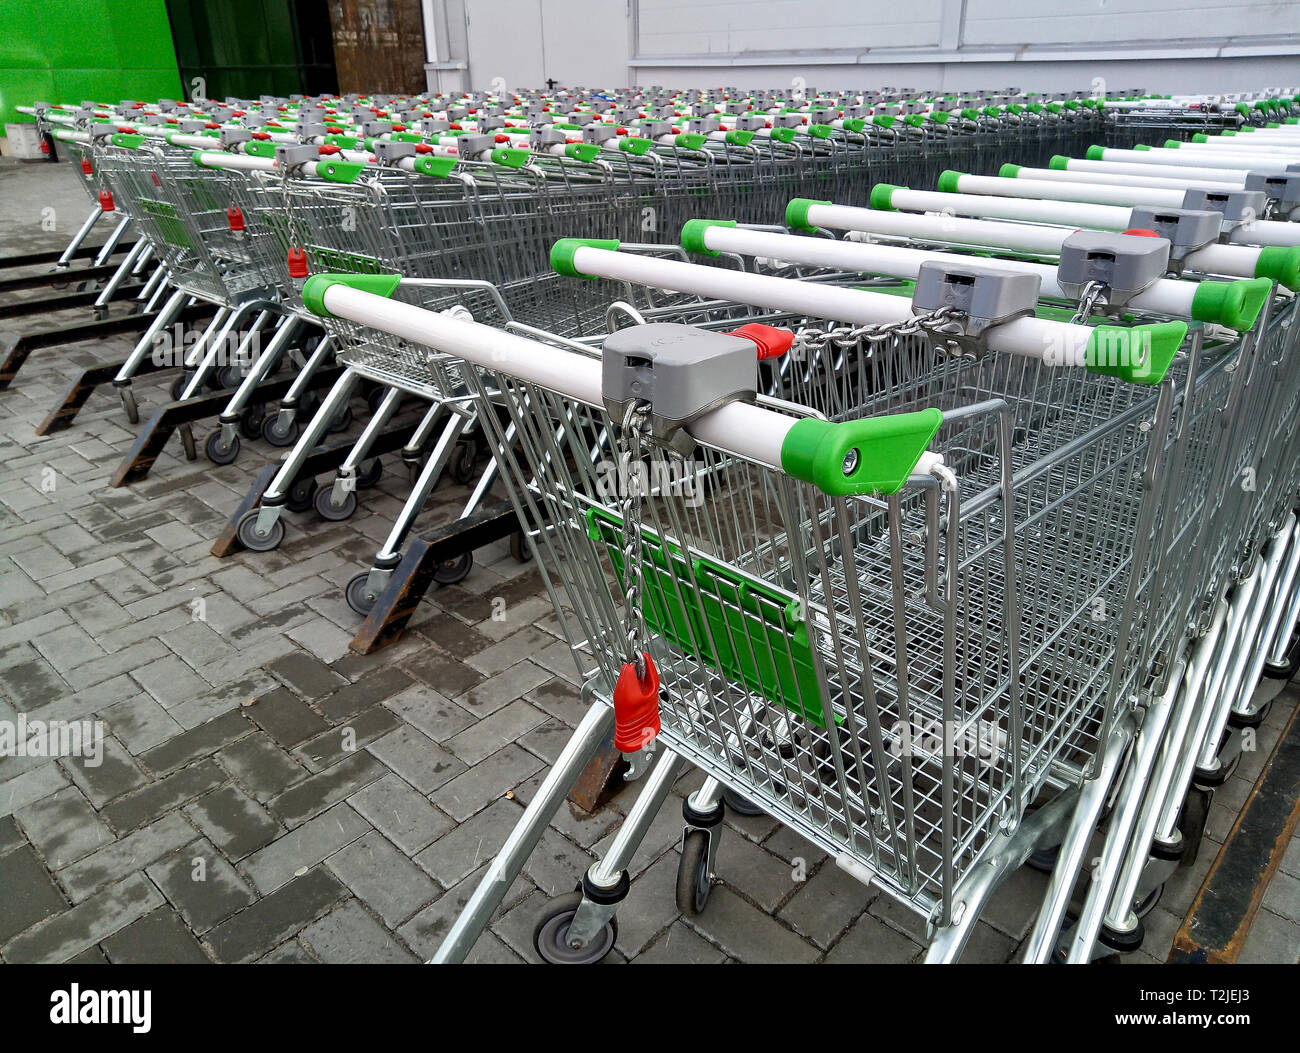 Zeilen von Shopping Carts zu verwenden - in Reihen für die Lagerung in der Nähe von einem Supermarkt oder Hyper Market Stockfoto